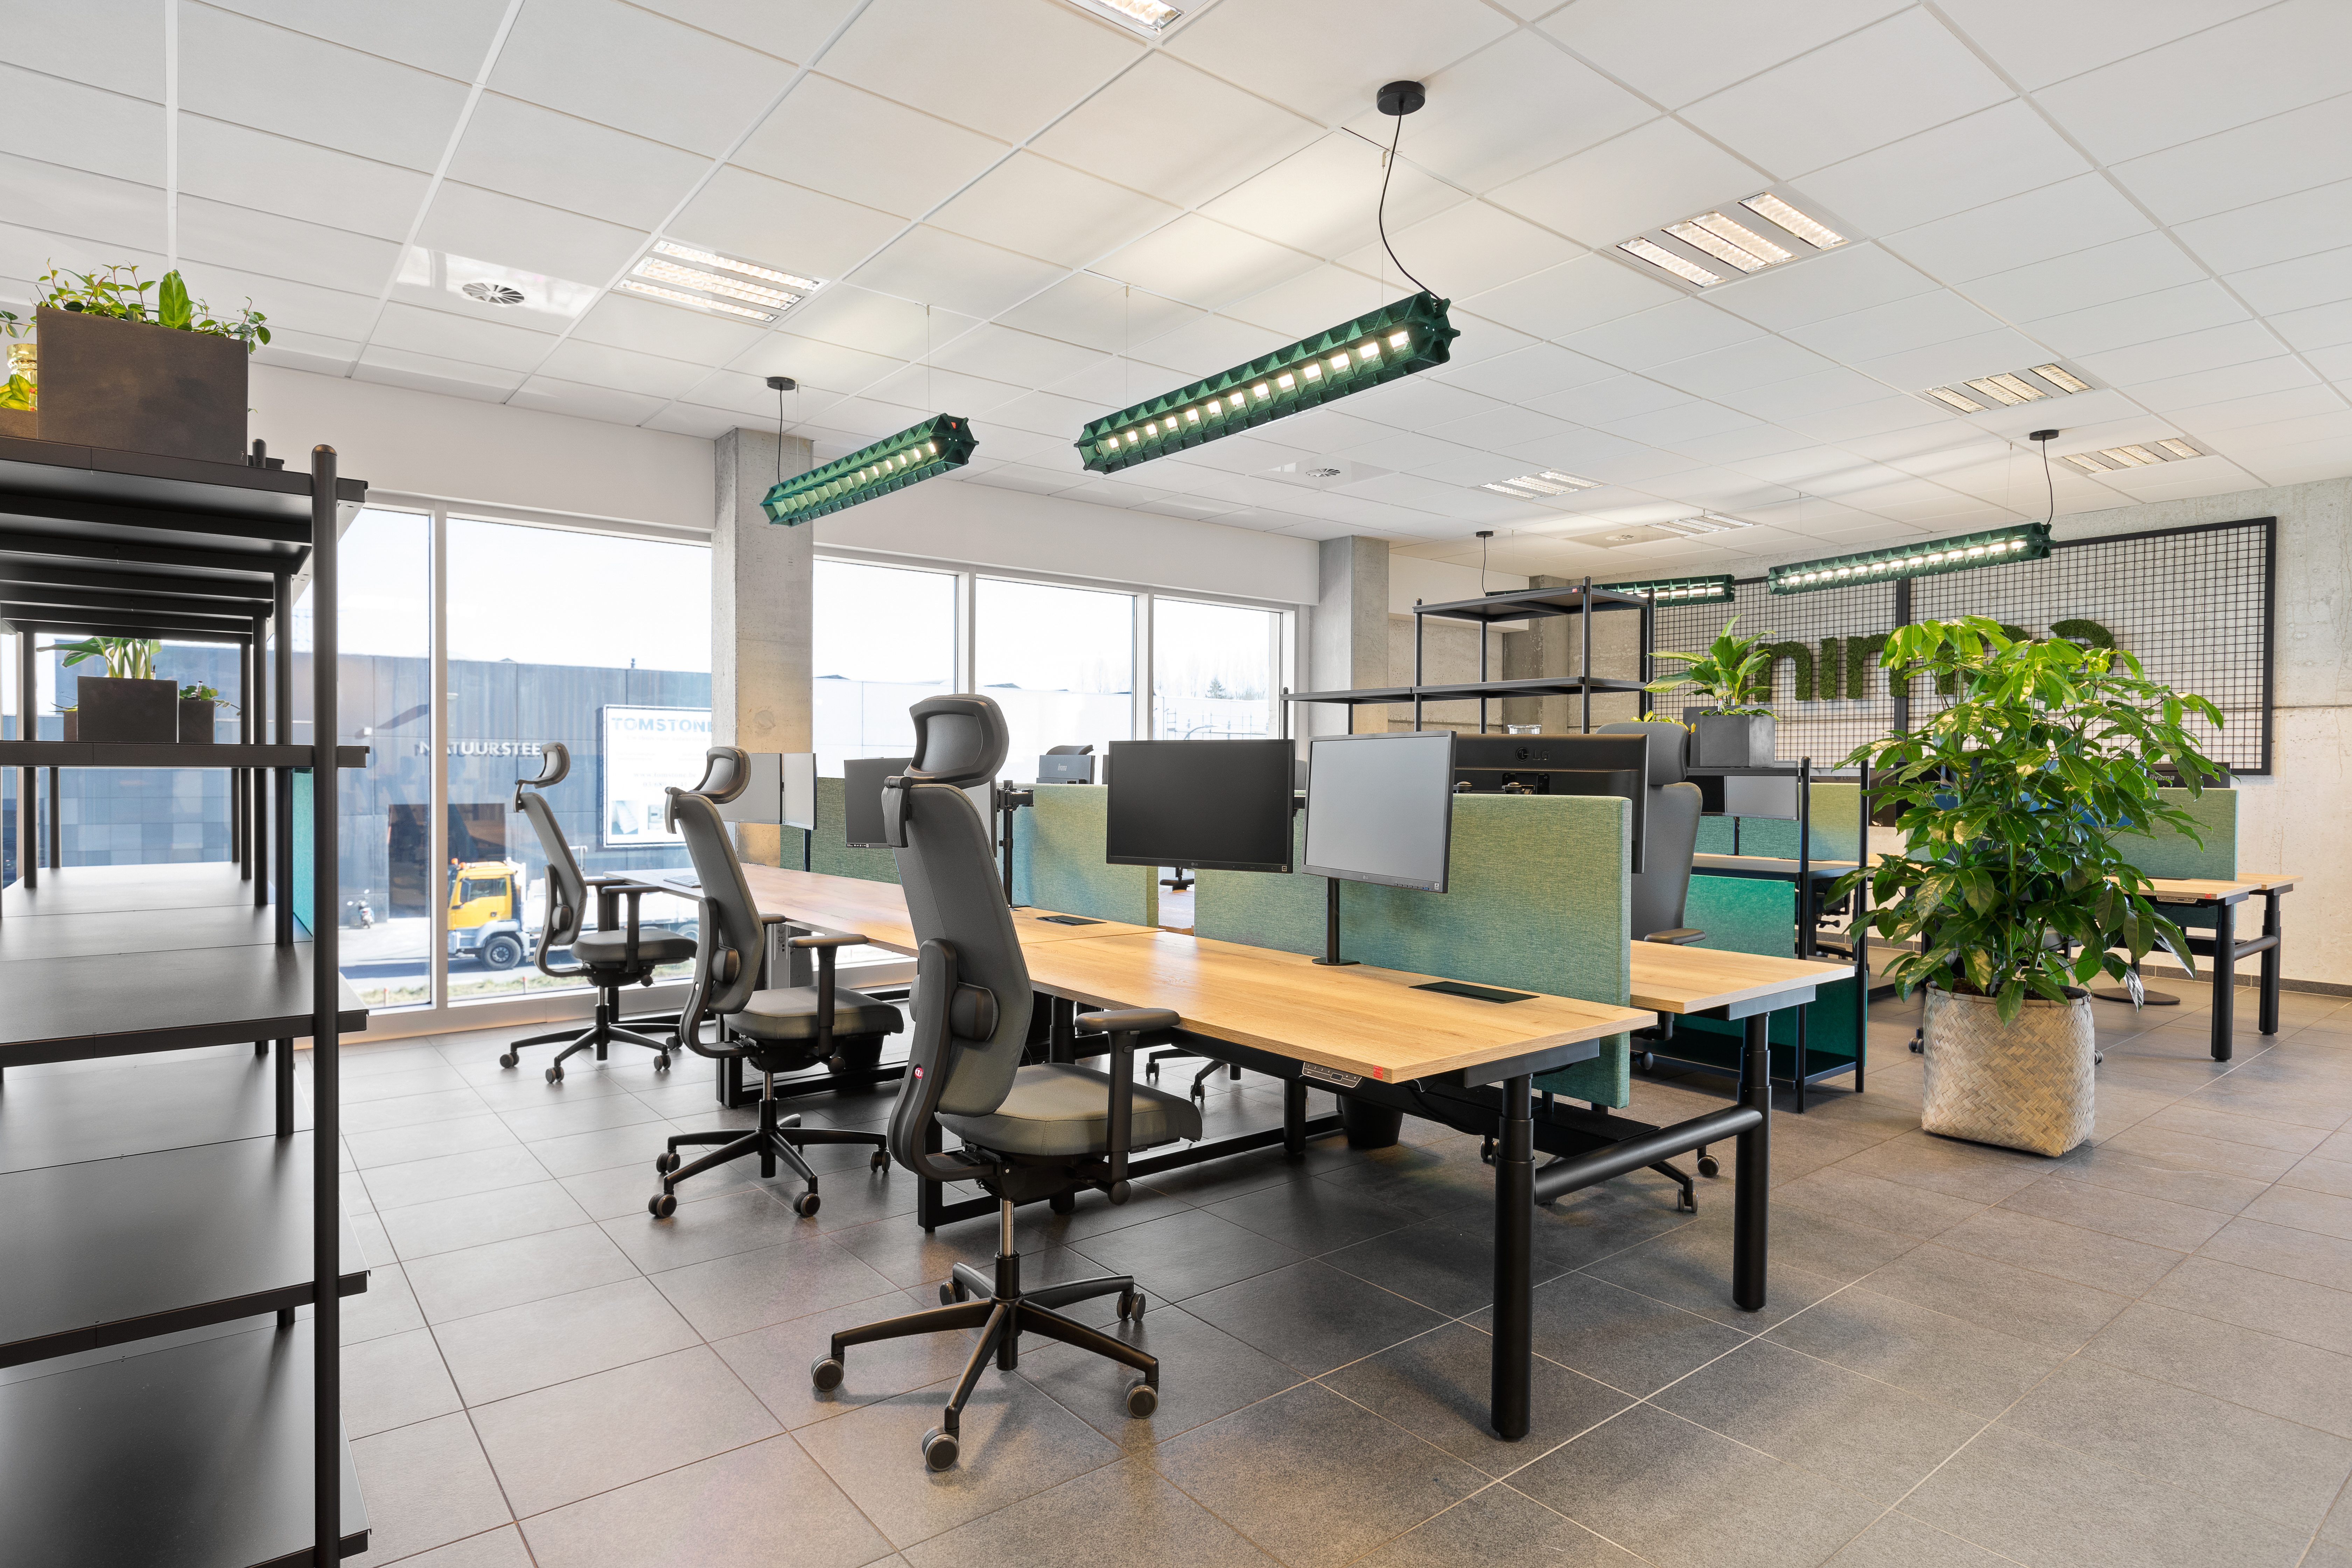 Kantoorruimte met Prio zit-sta bureaus en EXP lampen uit groen vilt